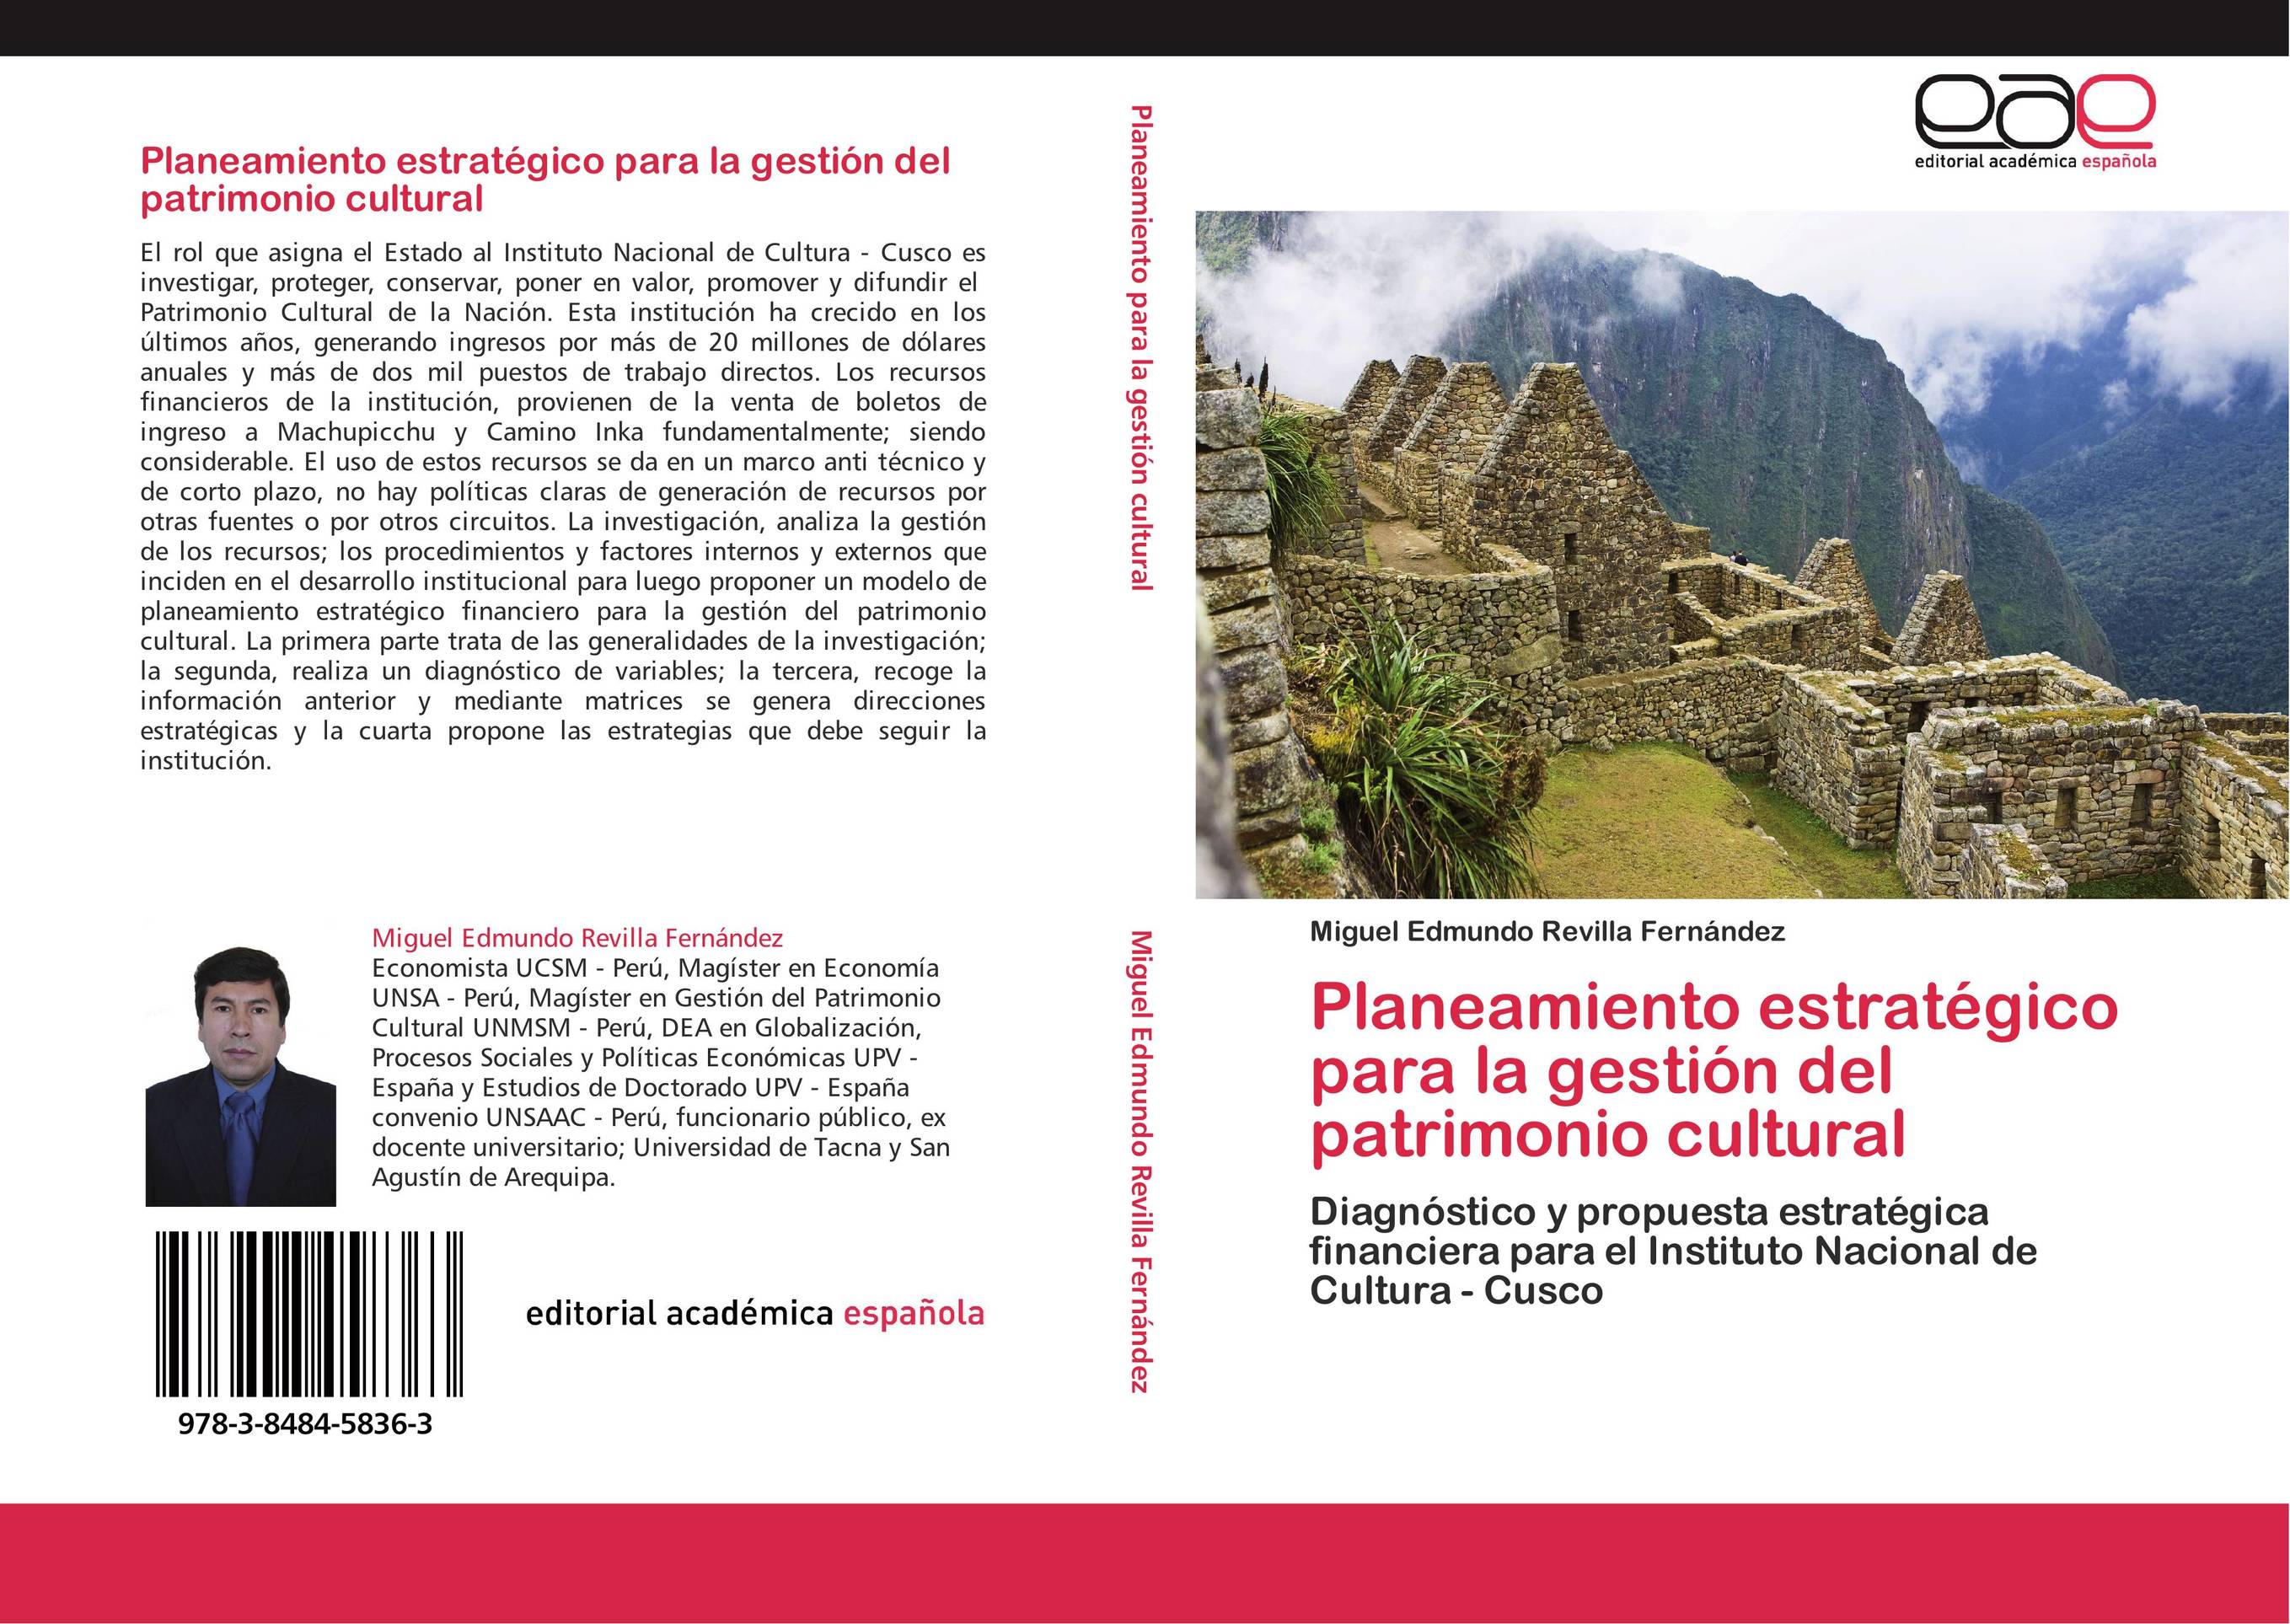 Planeamiento estratégico para la gestión del patrimonio cultural